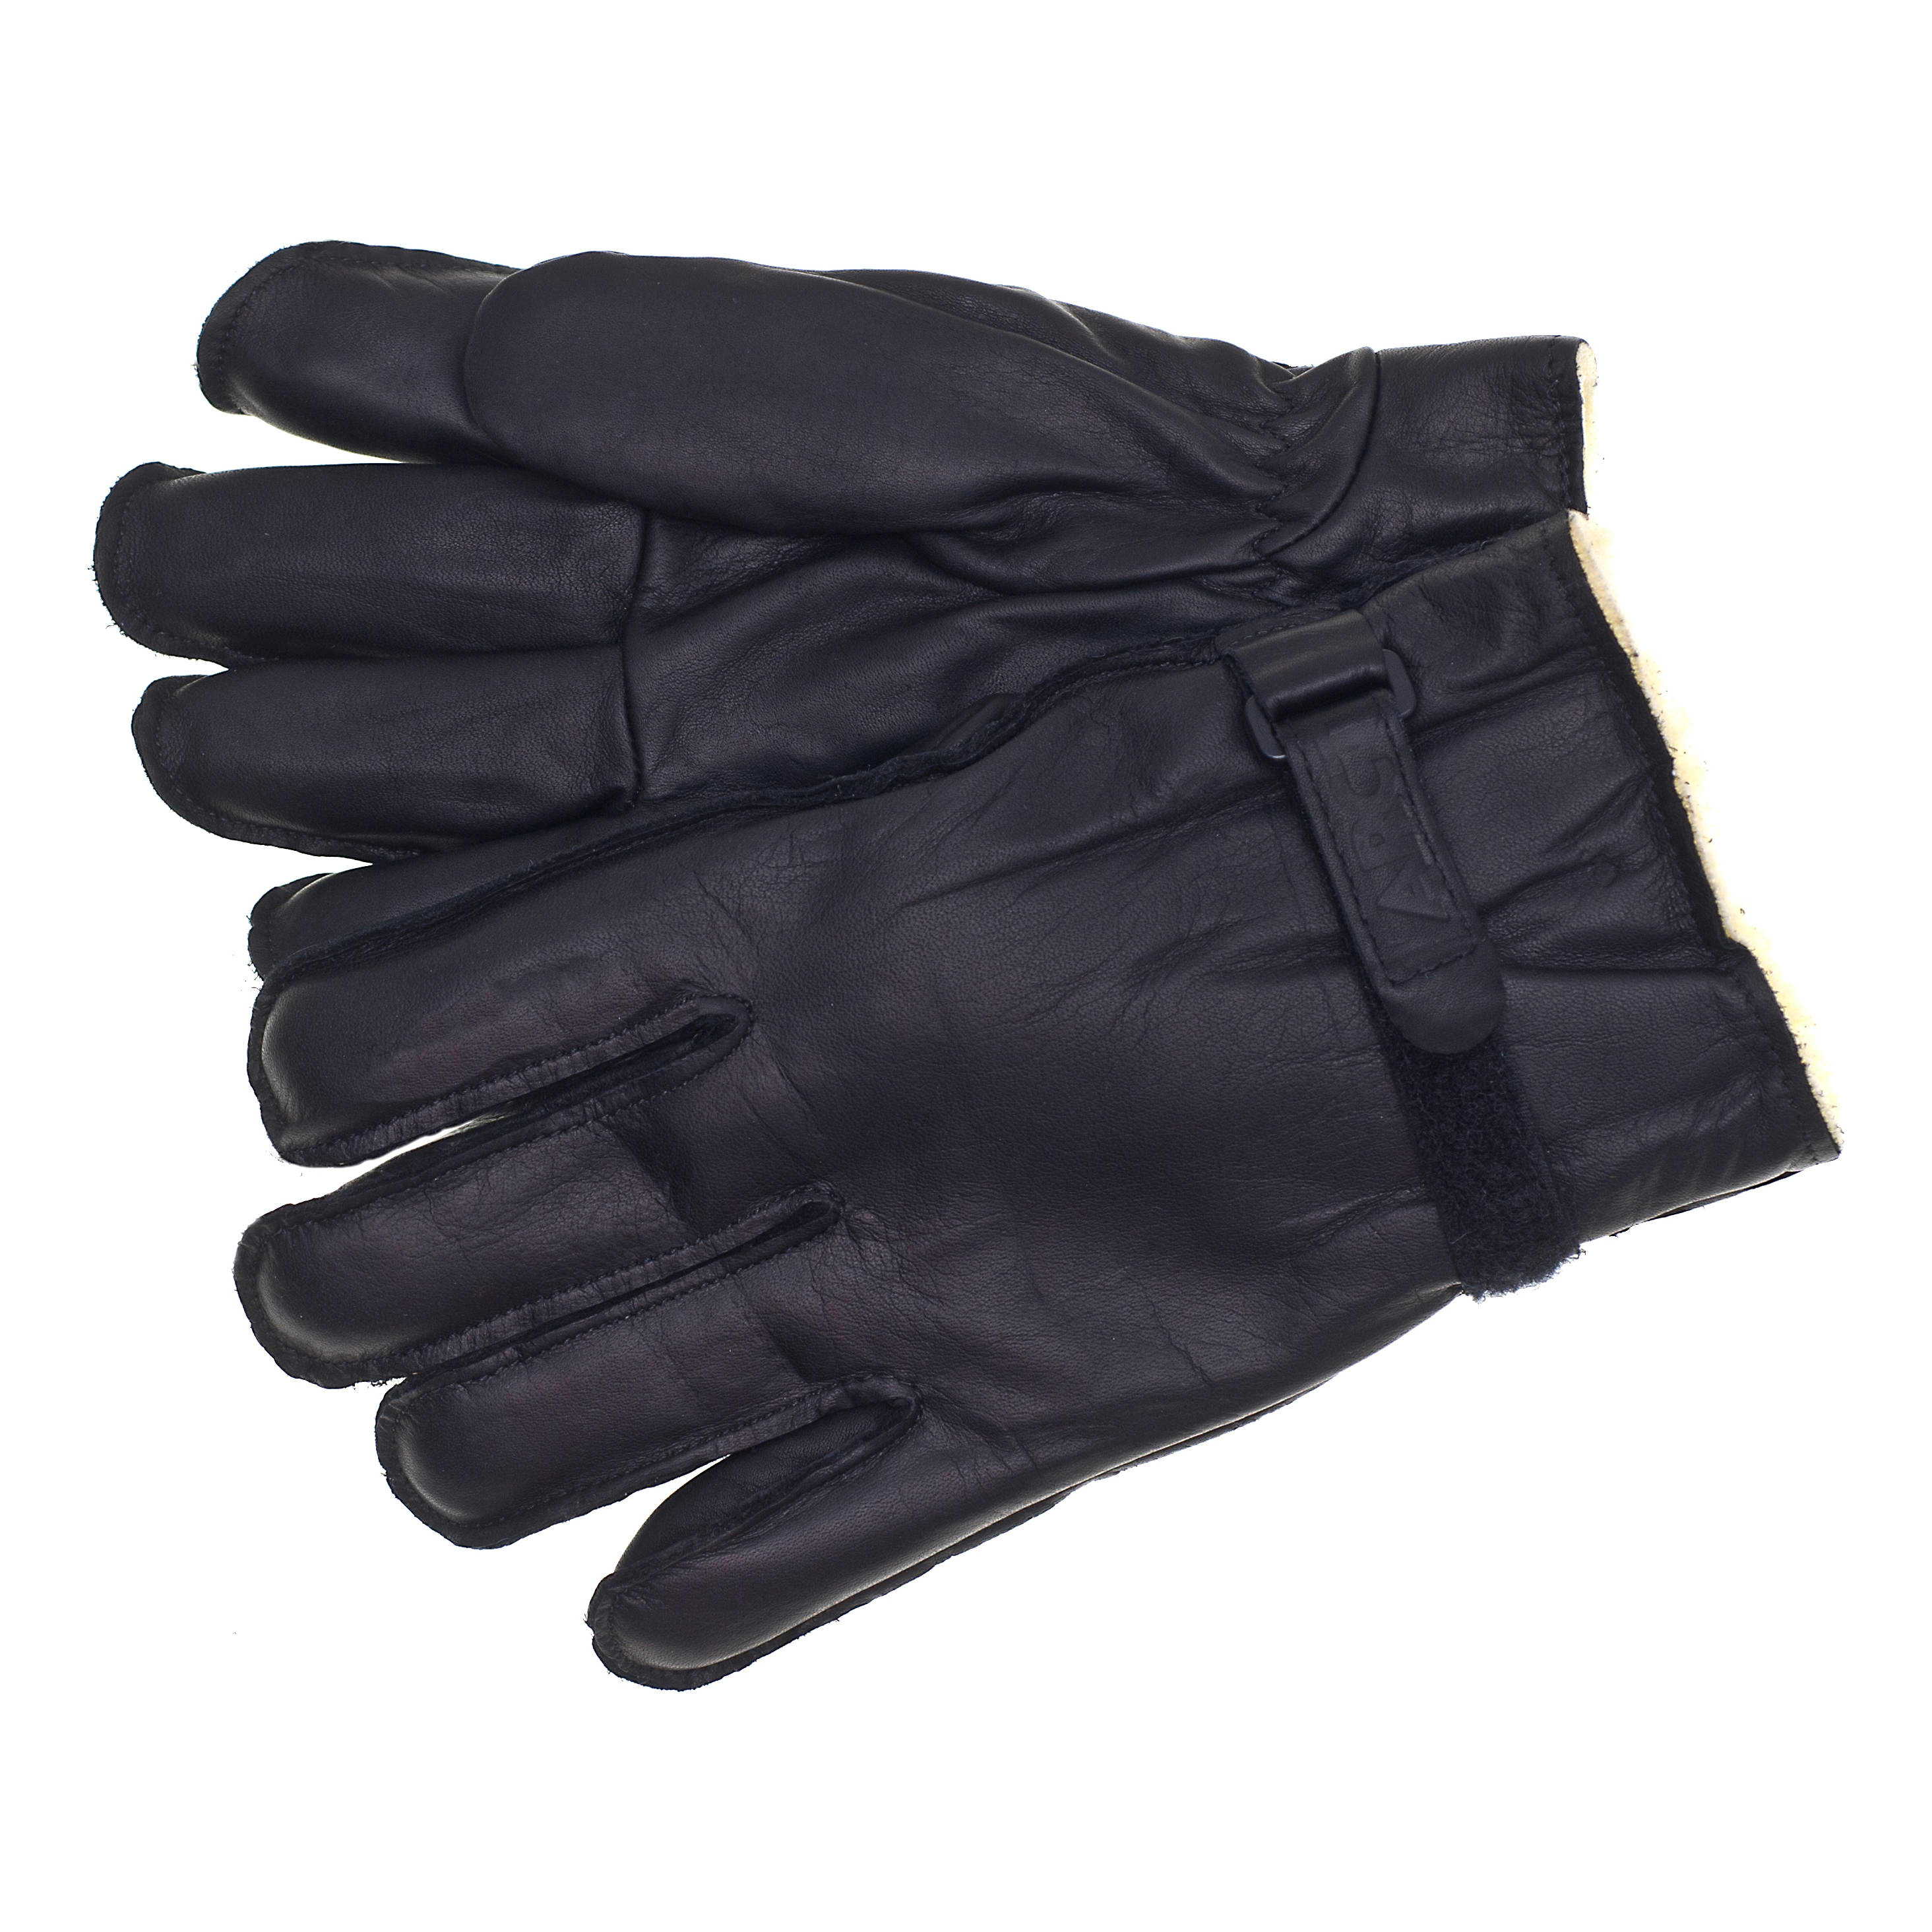 Raber Glove Arctica Sport Gloves - Black